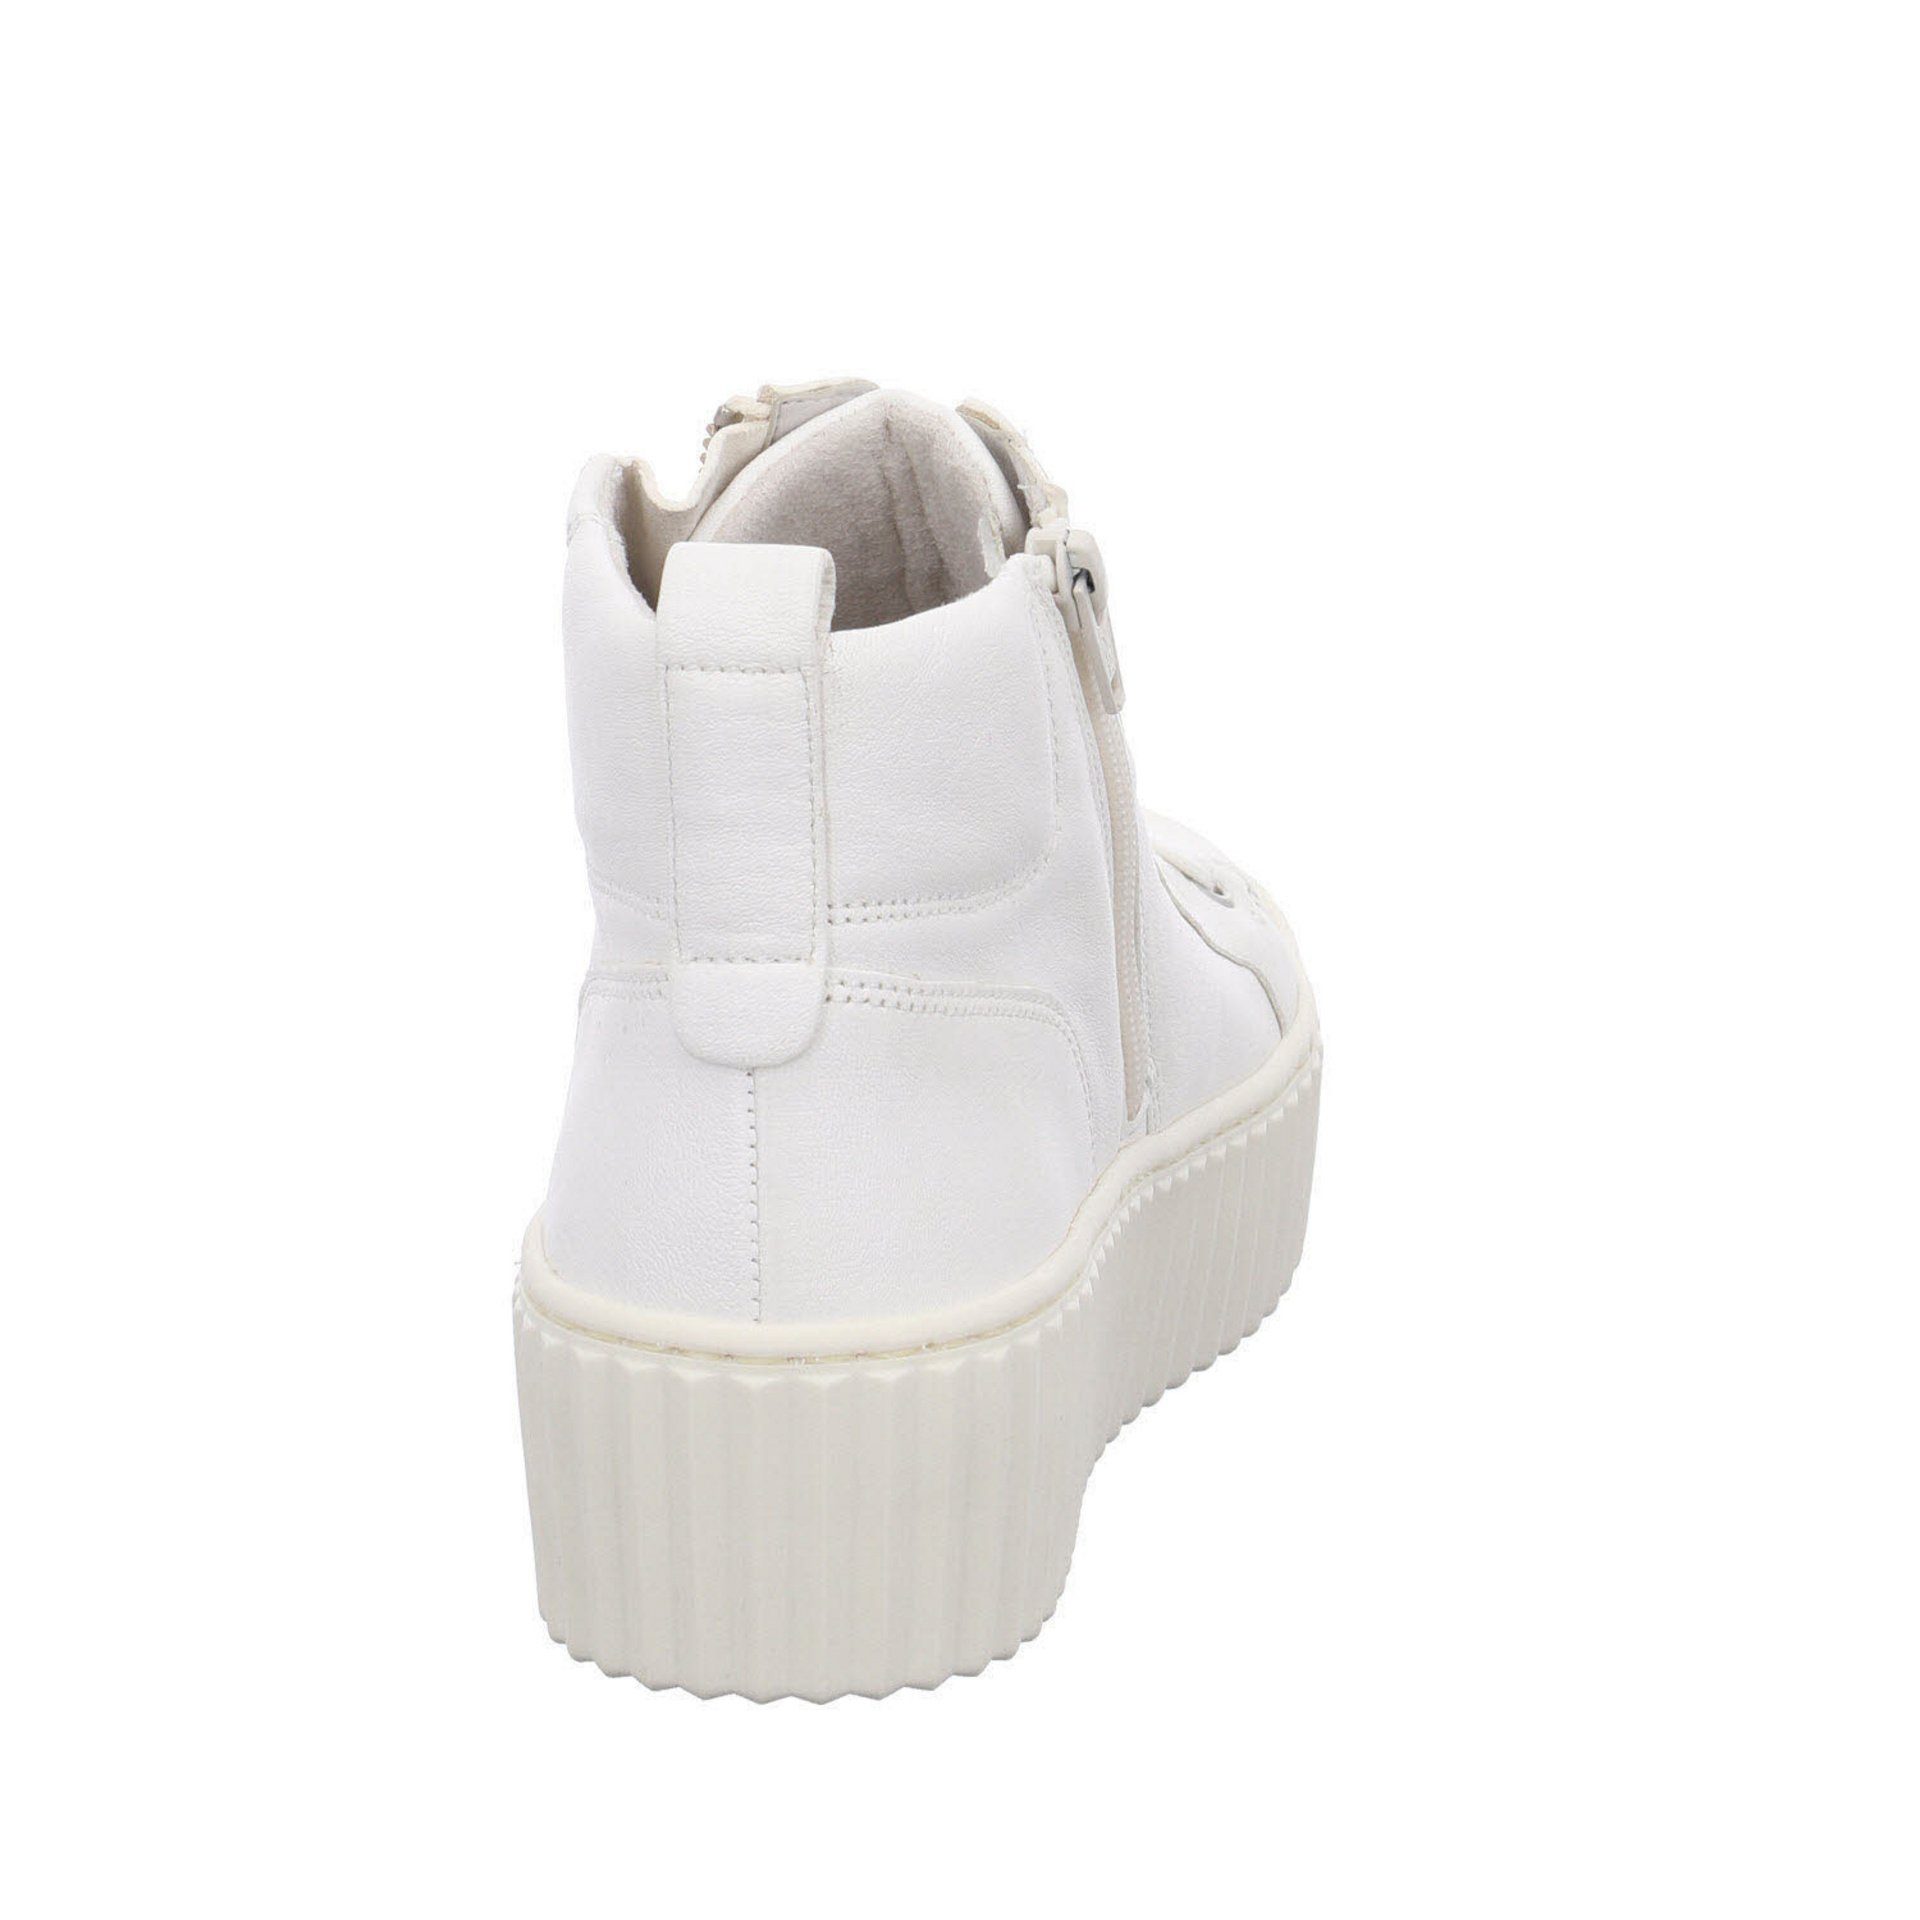 Gabor Damen Sneaker Schuhe (latte) Weiß Sneaker Glattleder Sport Halbschuhe Sneaker